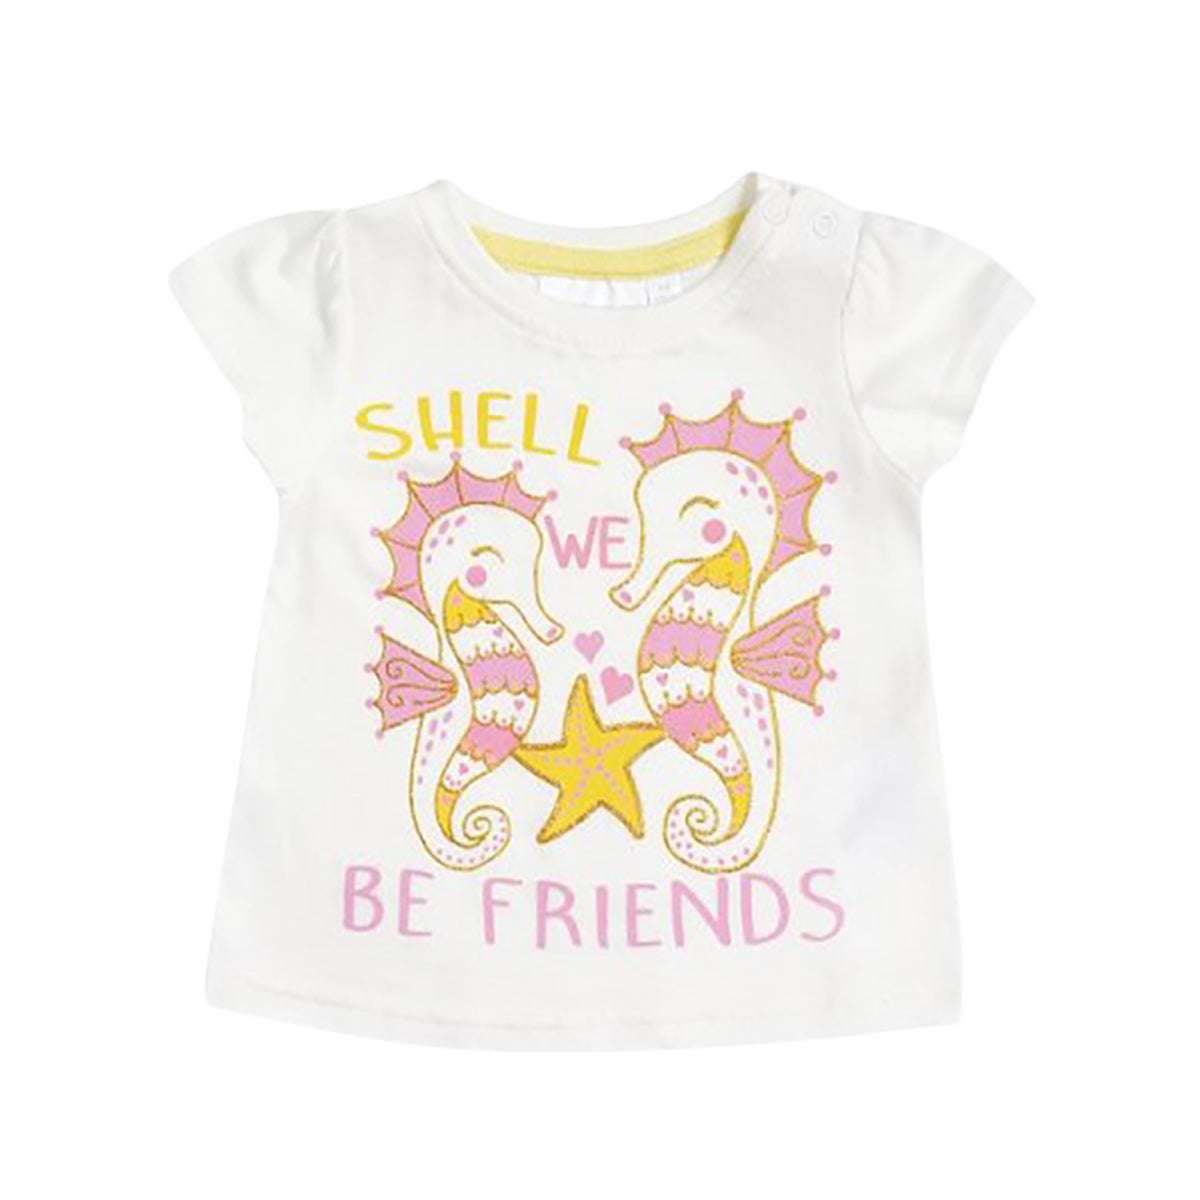 Shell Friends Kids' Short Sleeve T-Shirt